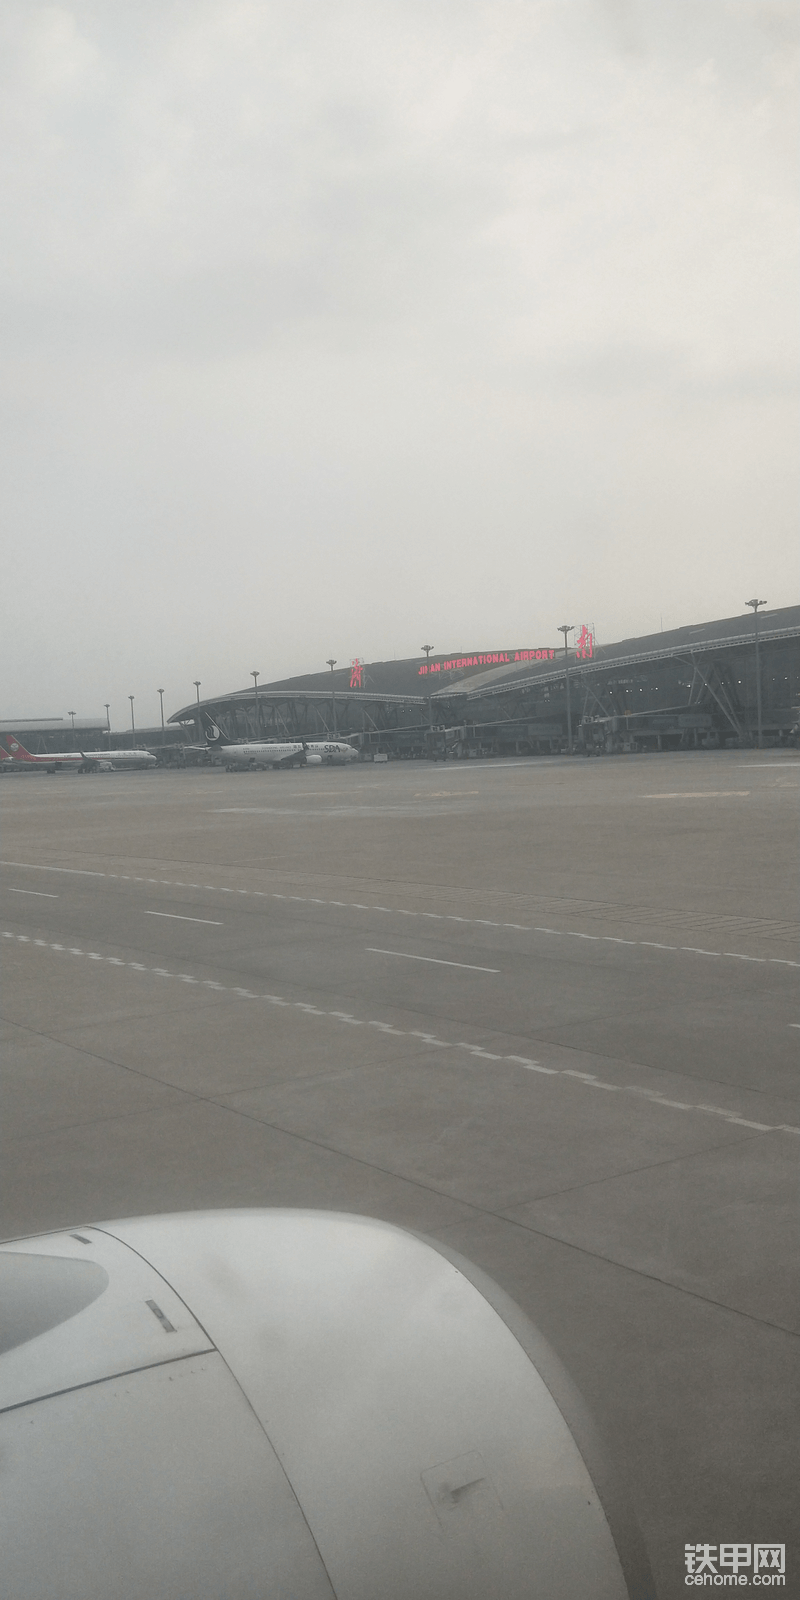 经过一个多小时终于到达济南机场